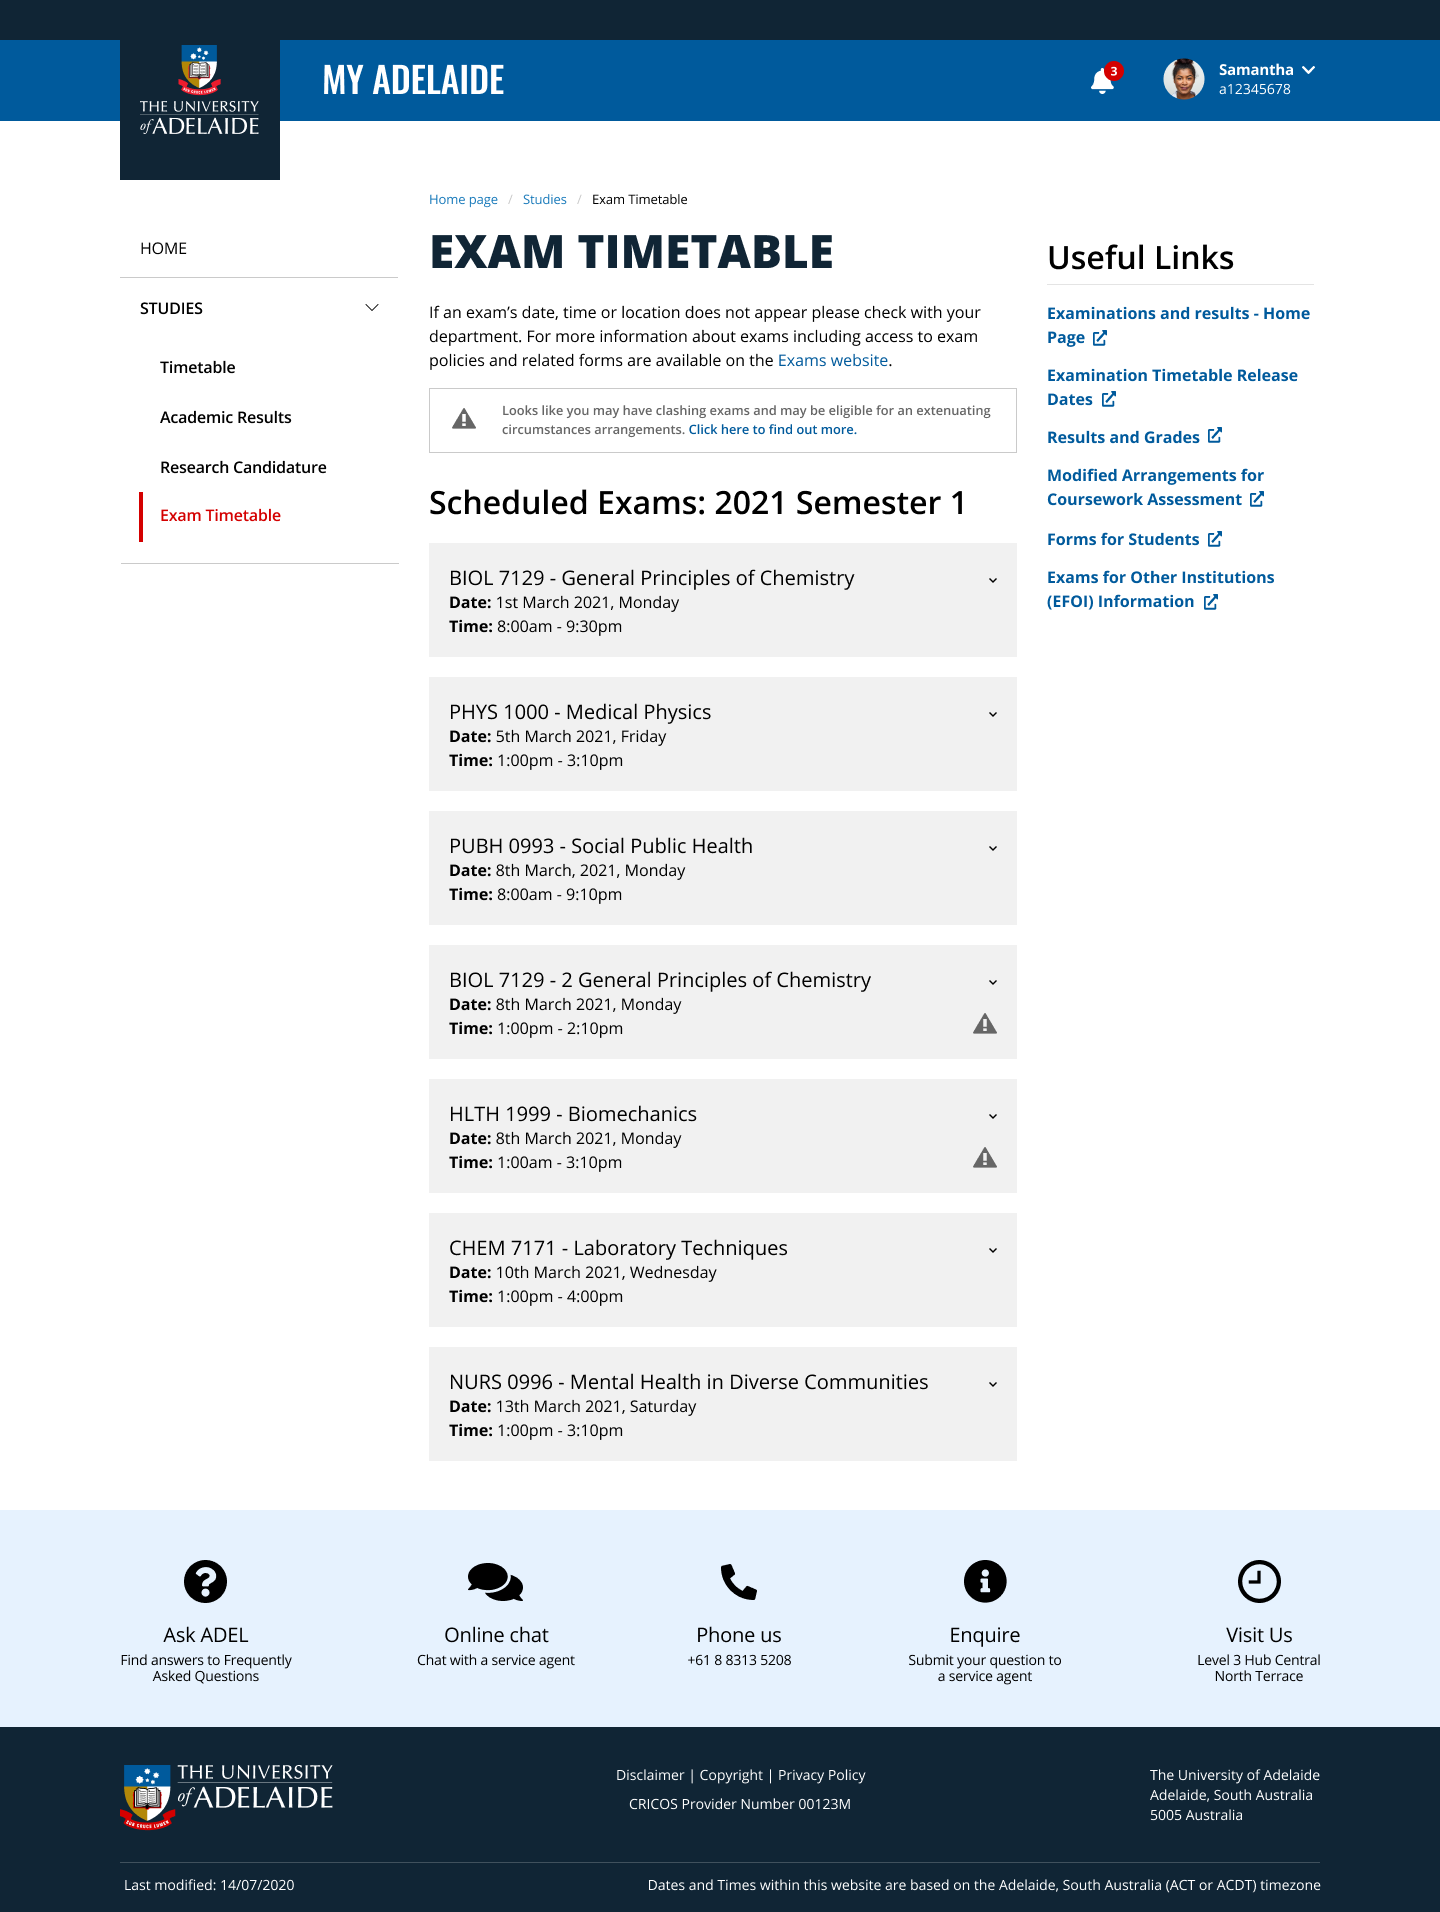 Screenshot of MyAdelaide exam timetable